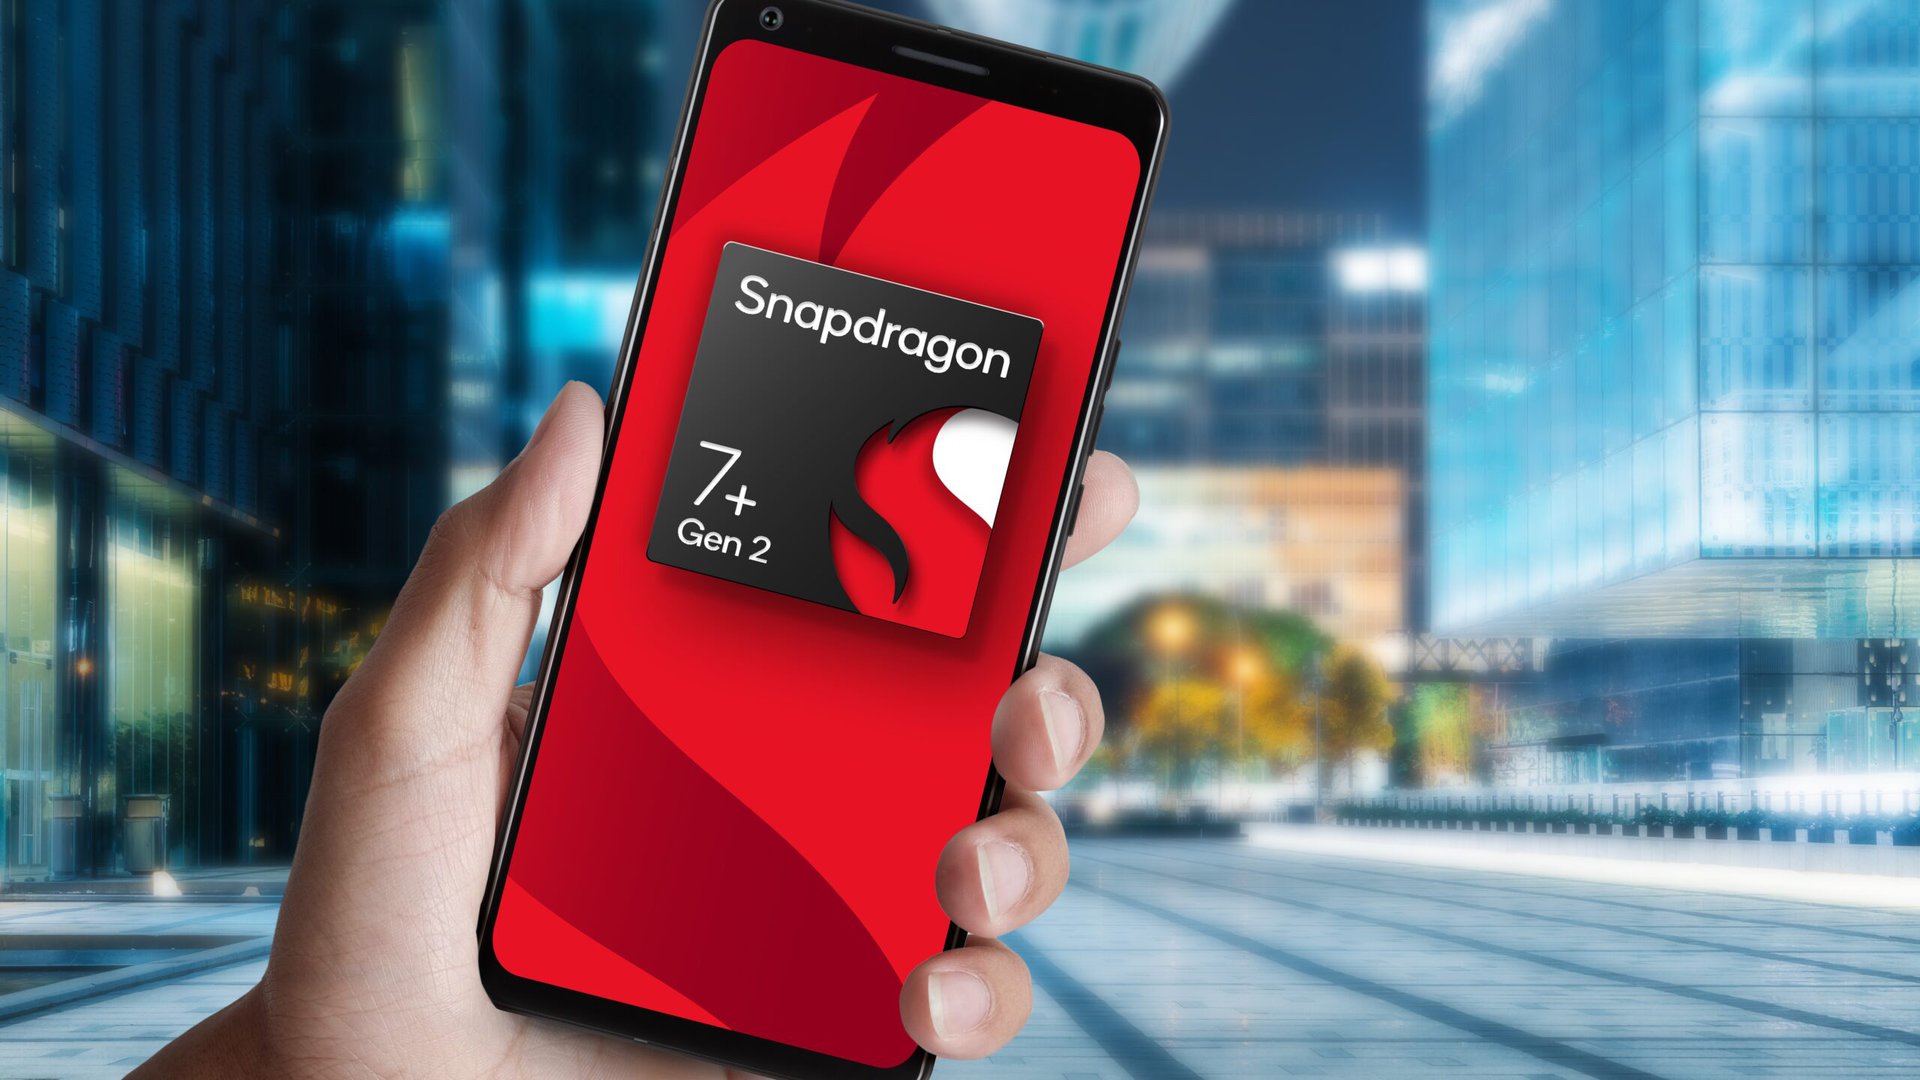 Diseño de referencia Snapdragon 7 Plus Gen 2